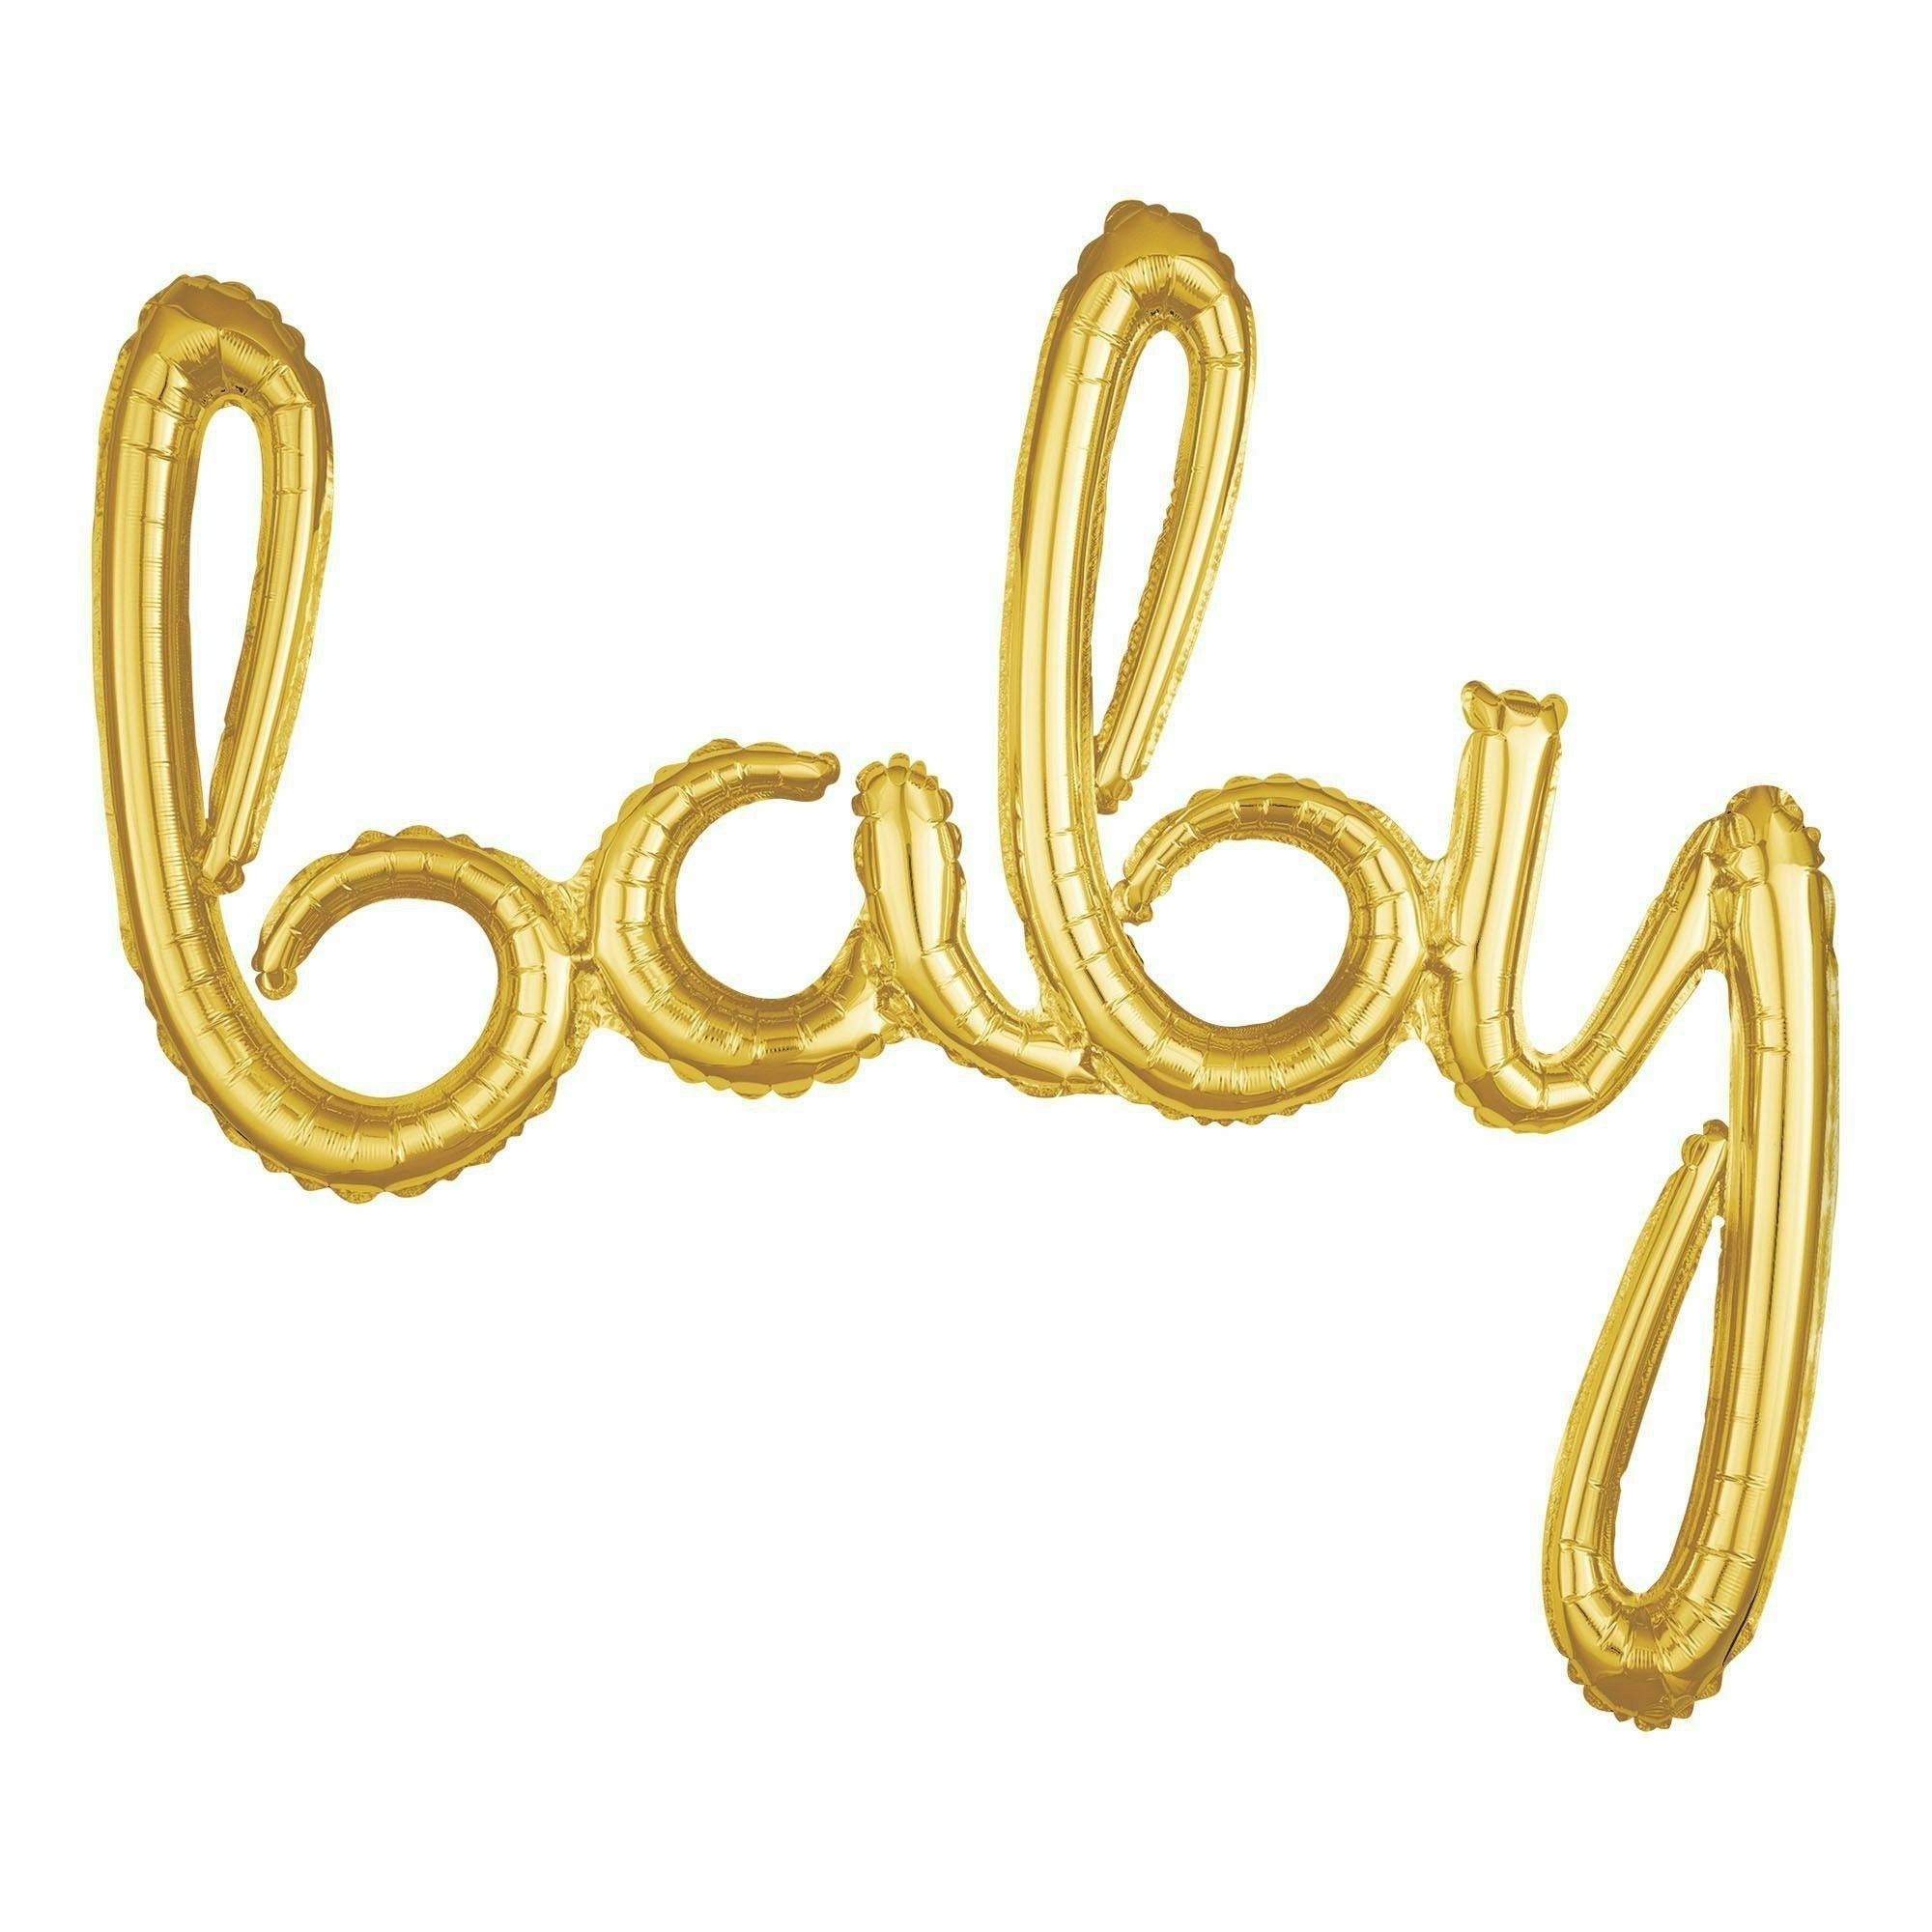 Amscan BALLOONS 820 Foil Balloon Script Phrases "Baby" Gold